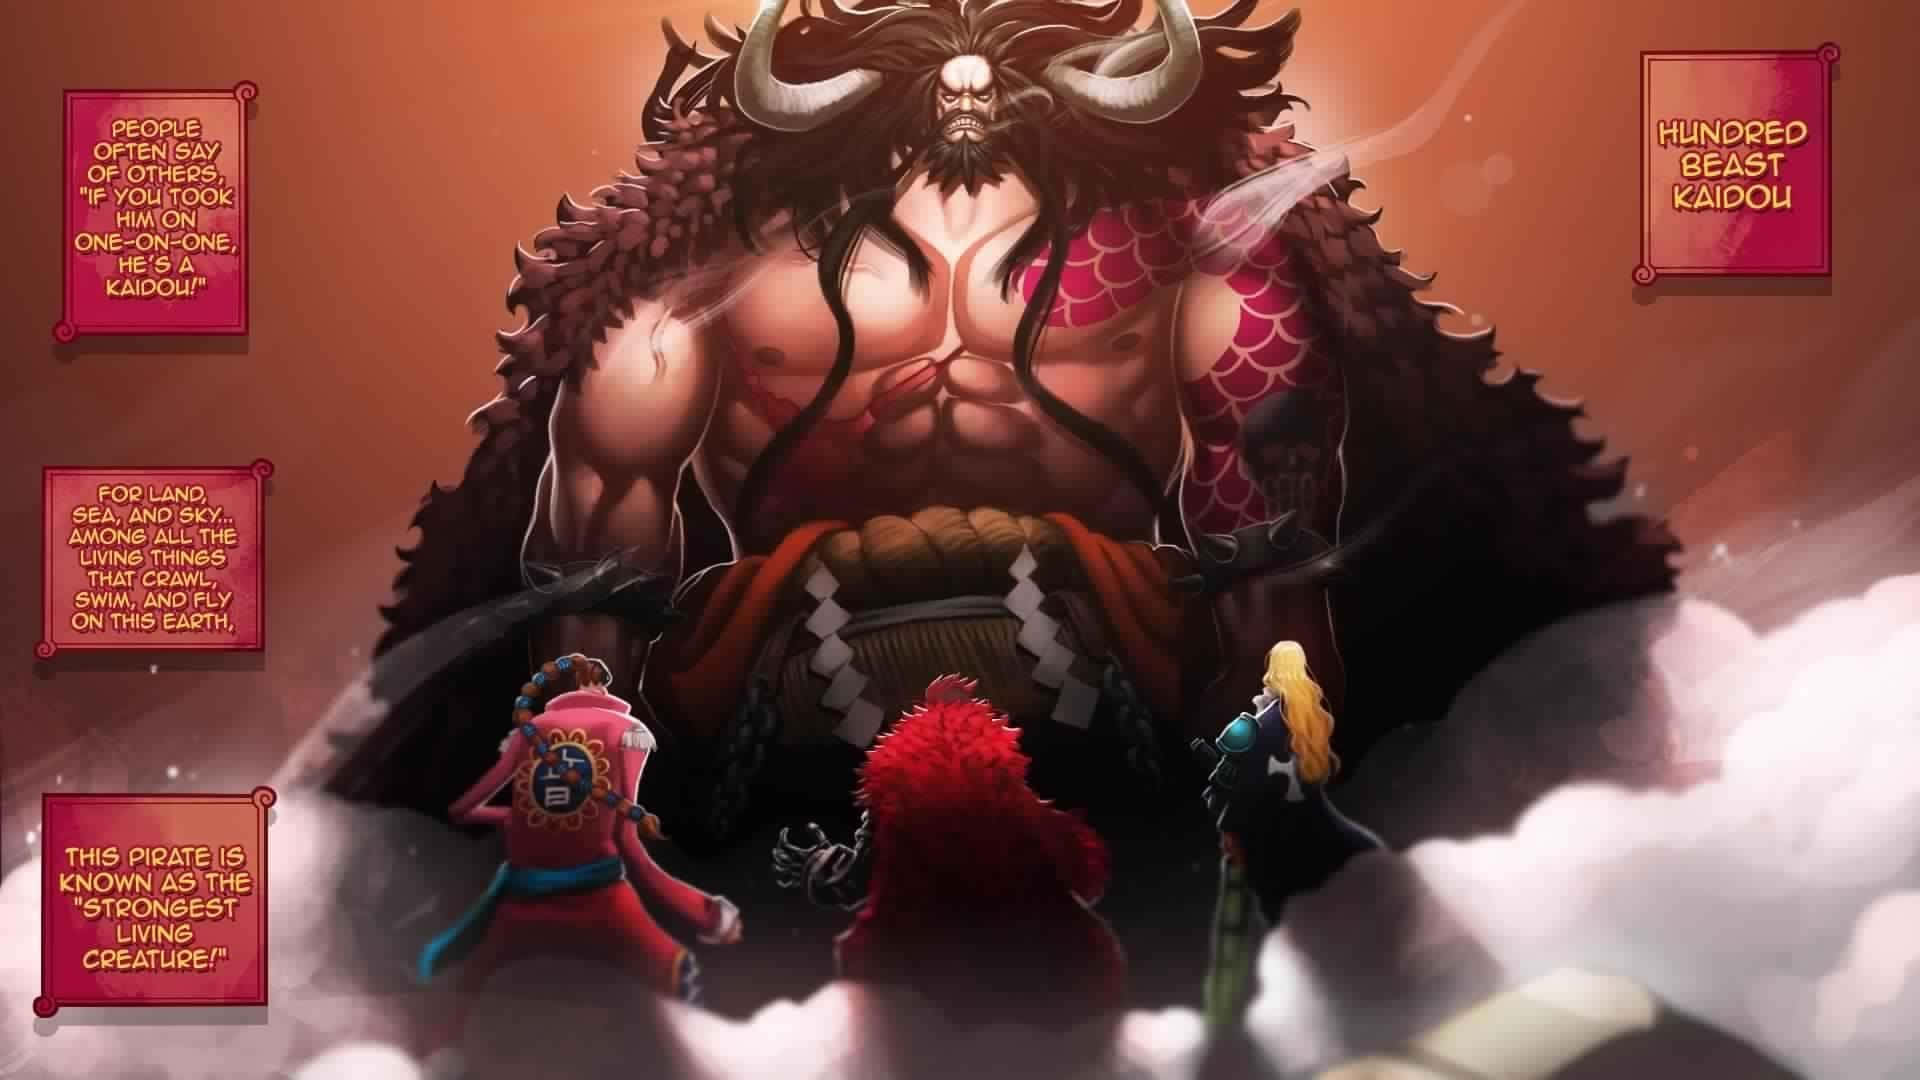 The Masked Beast Kaido Background